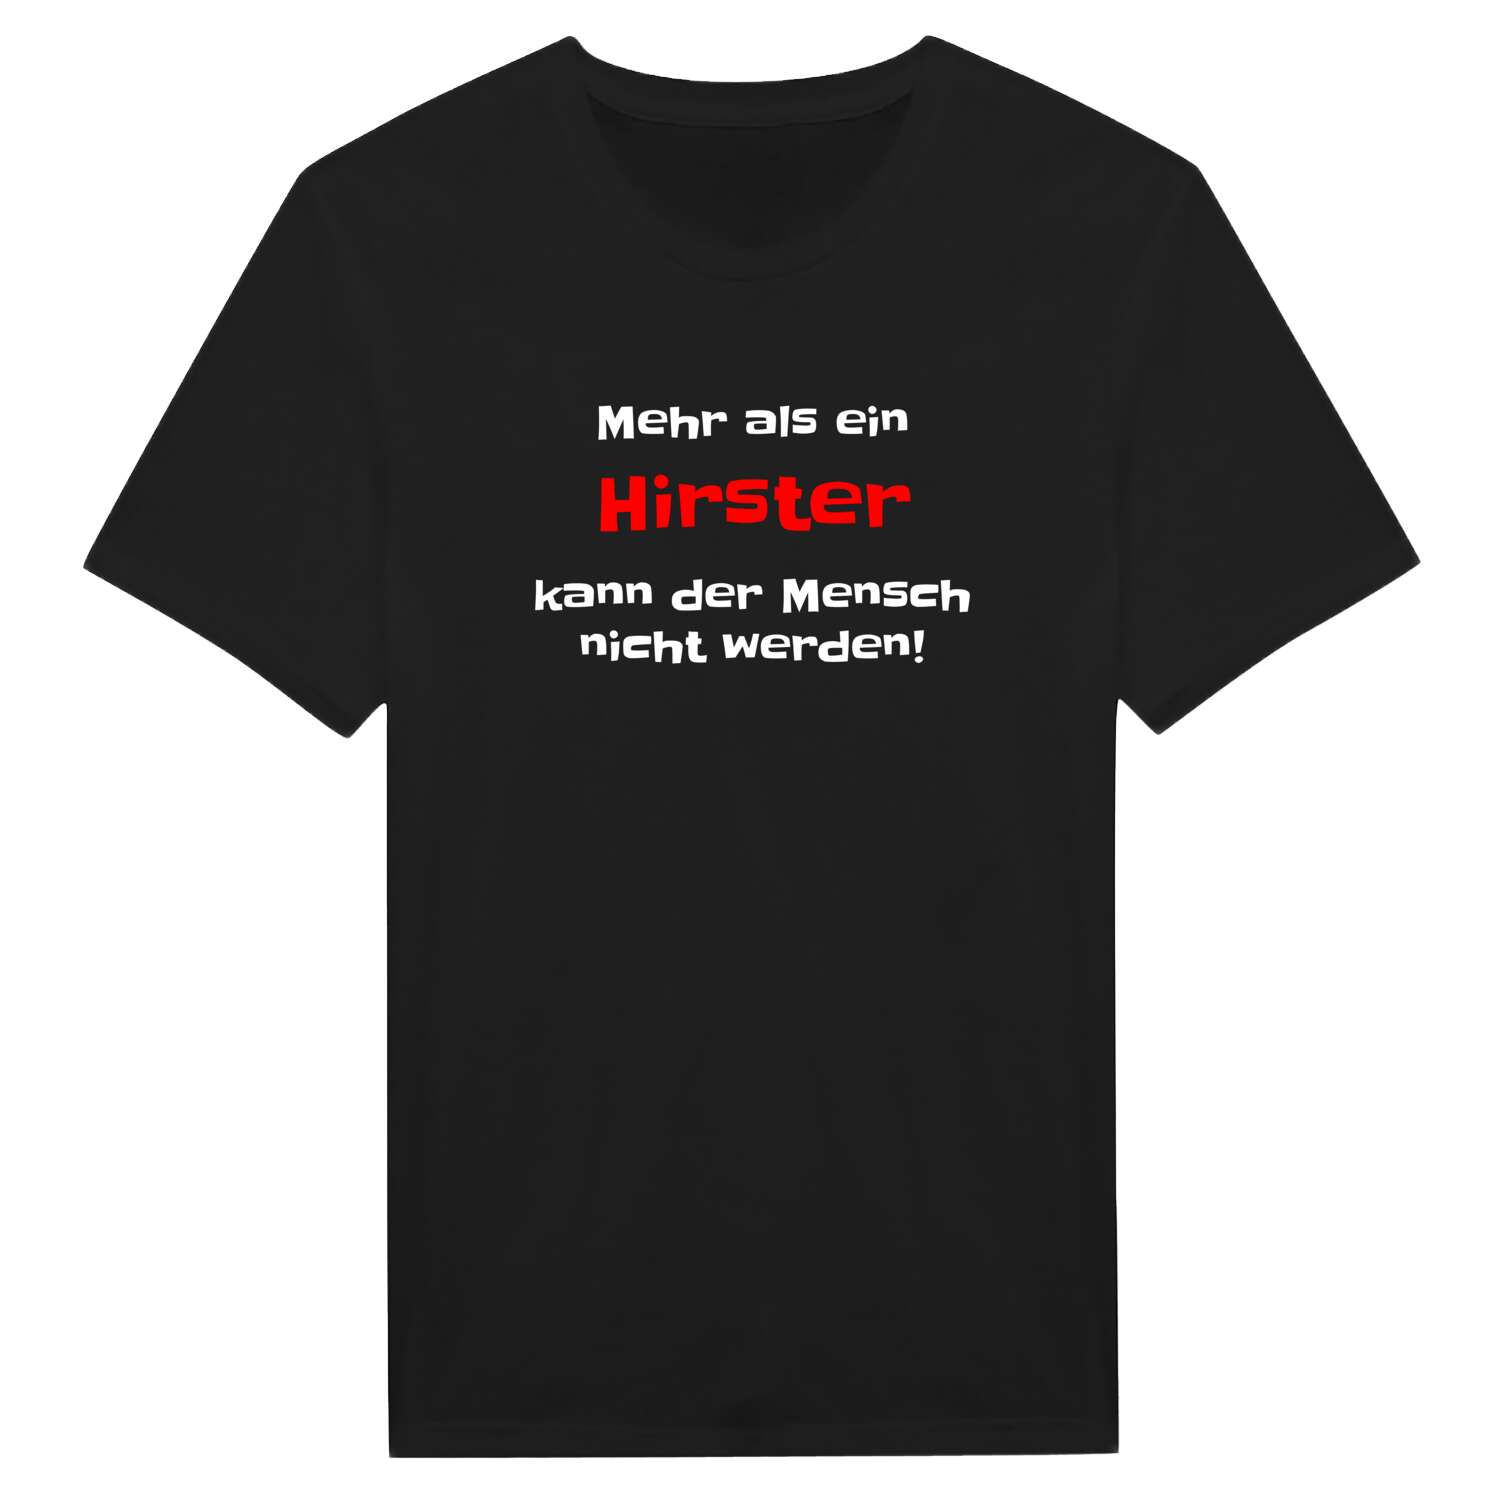 Hirst T-Shirt »Mehr als ein«